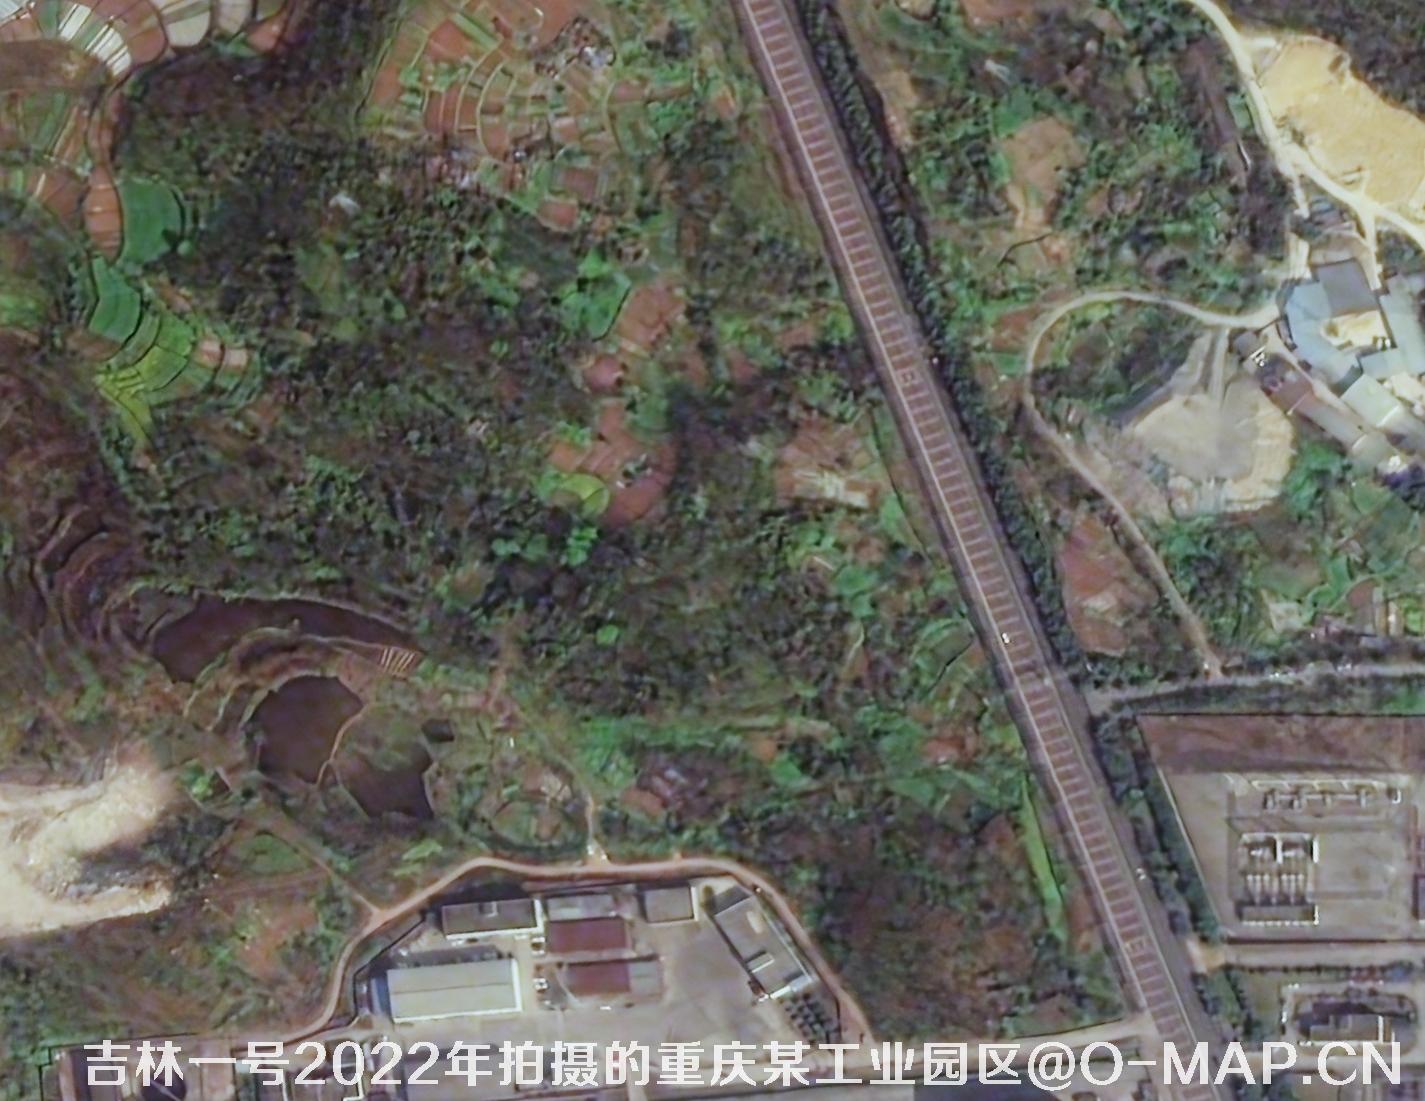 1米分辨率国产卫星拍摄的高清图片